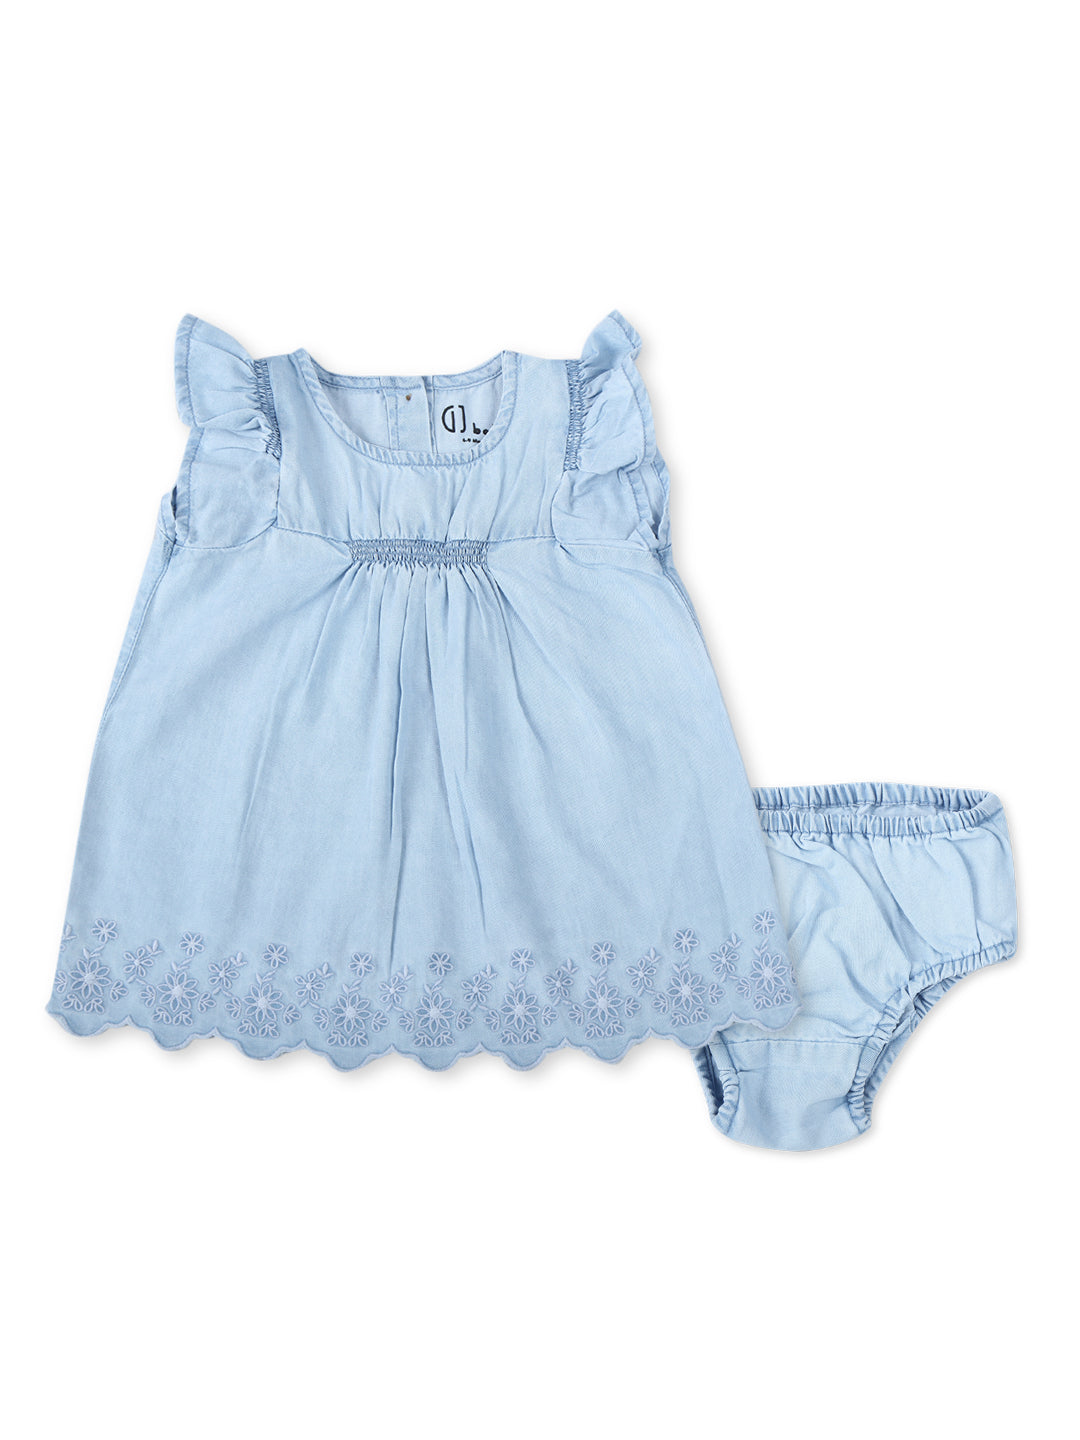 Baby Girls Blue Cotton Denim Solid Dress